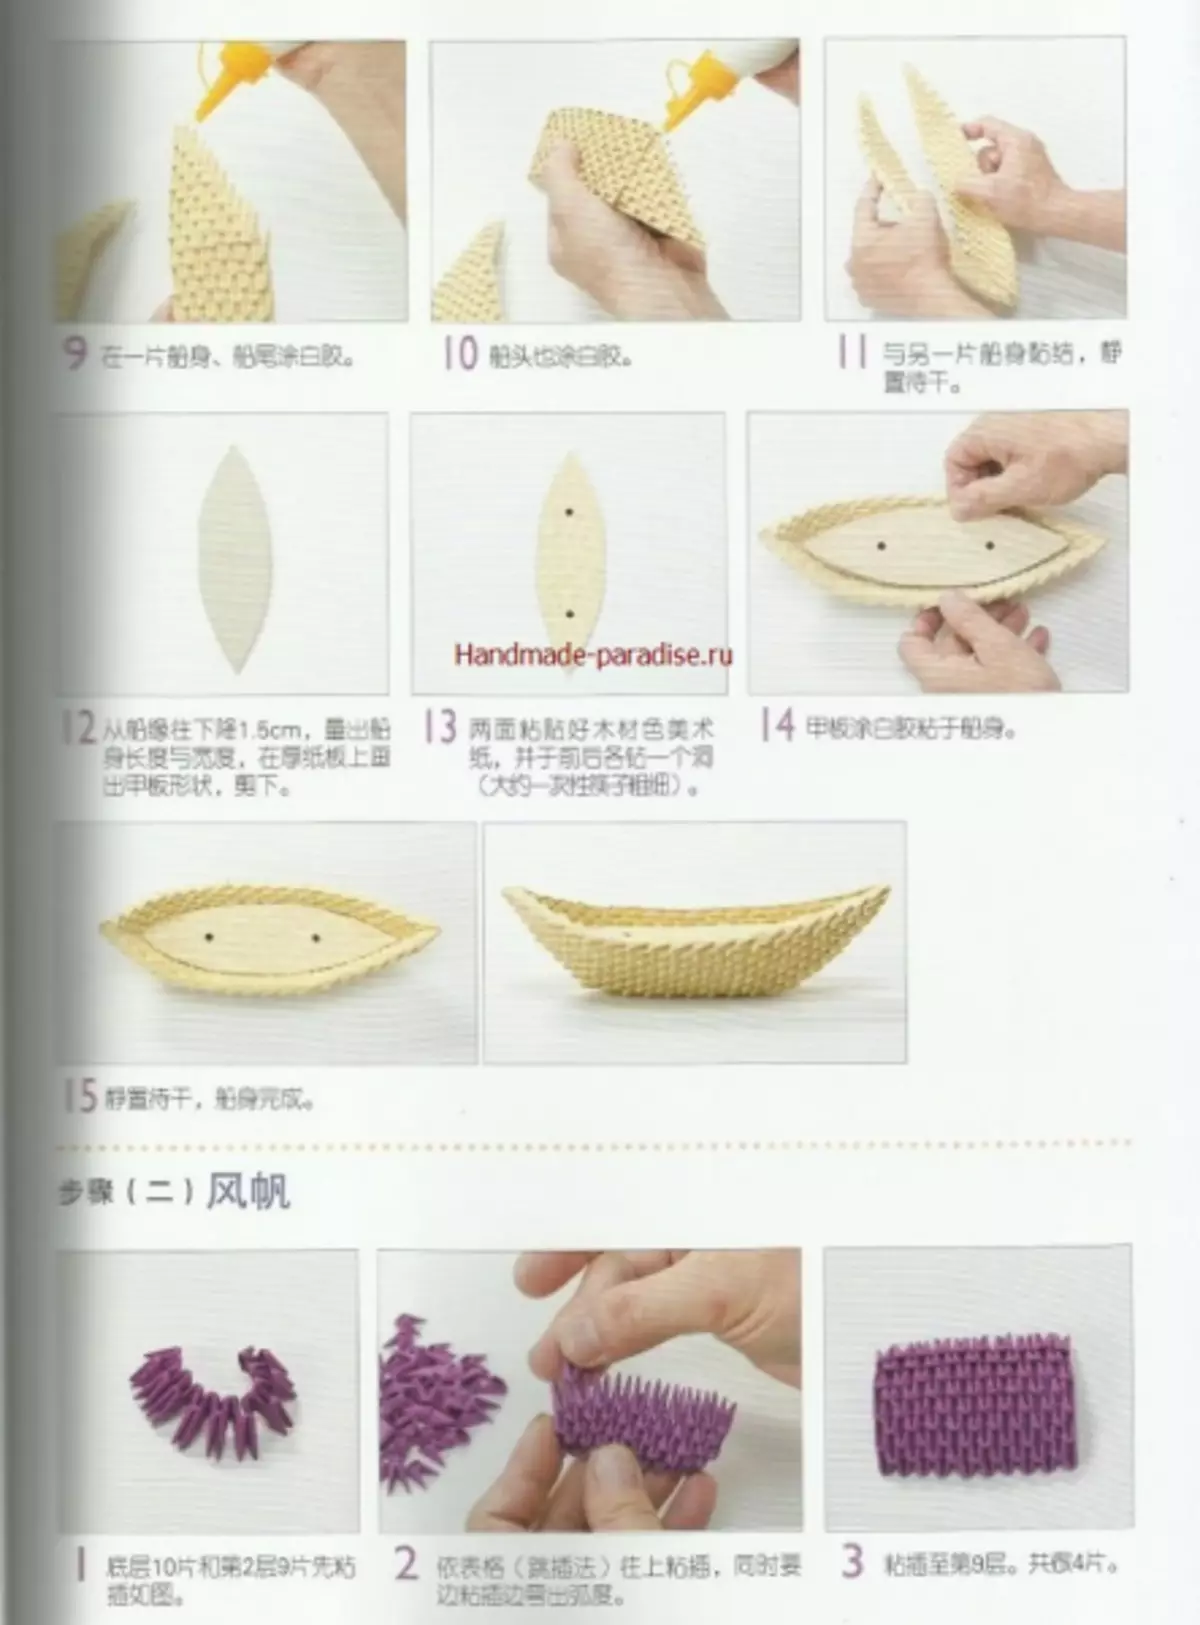 Modulárny origami. Japonský časopis s magisterskými triedami